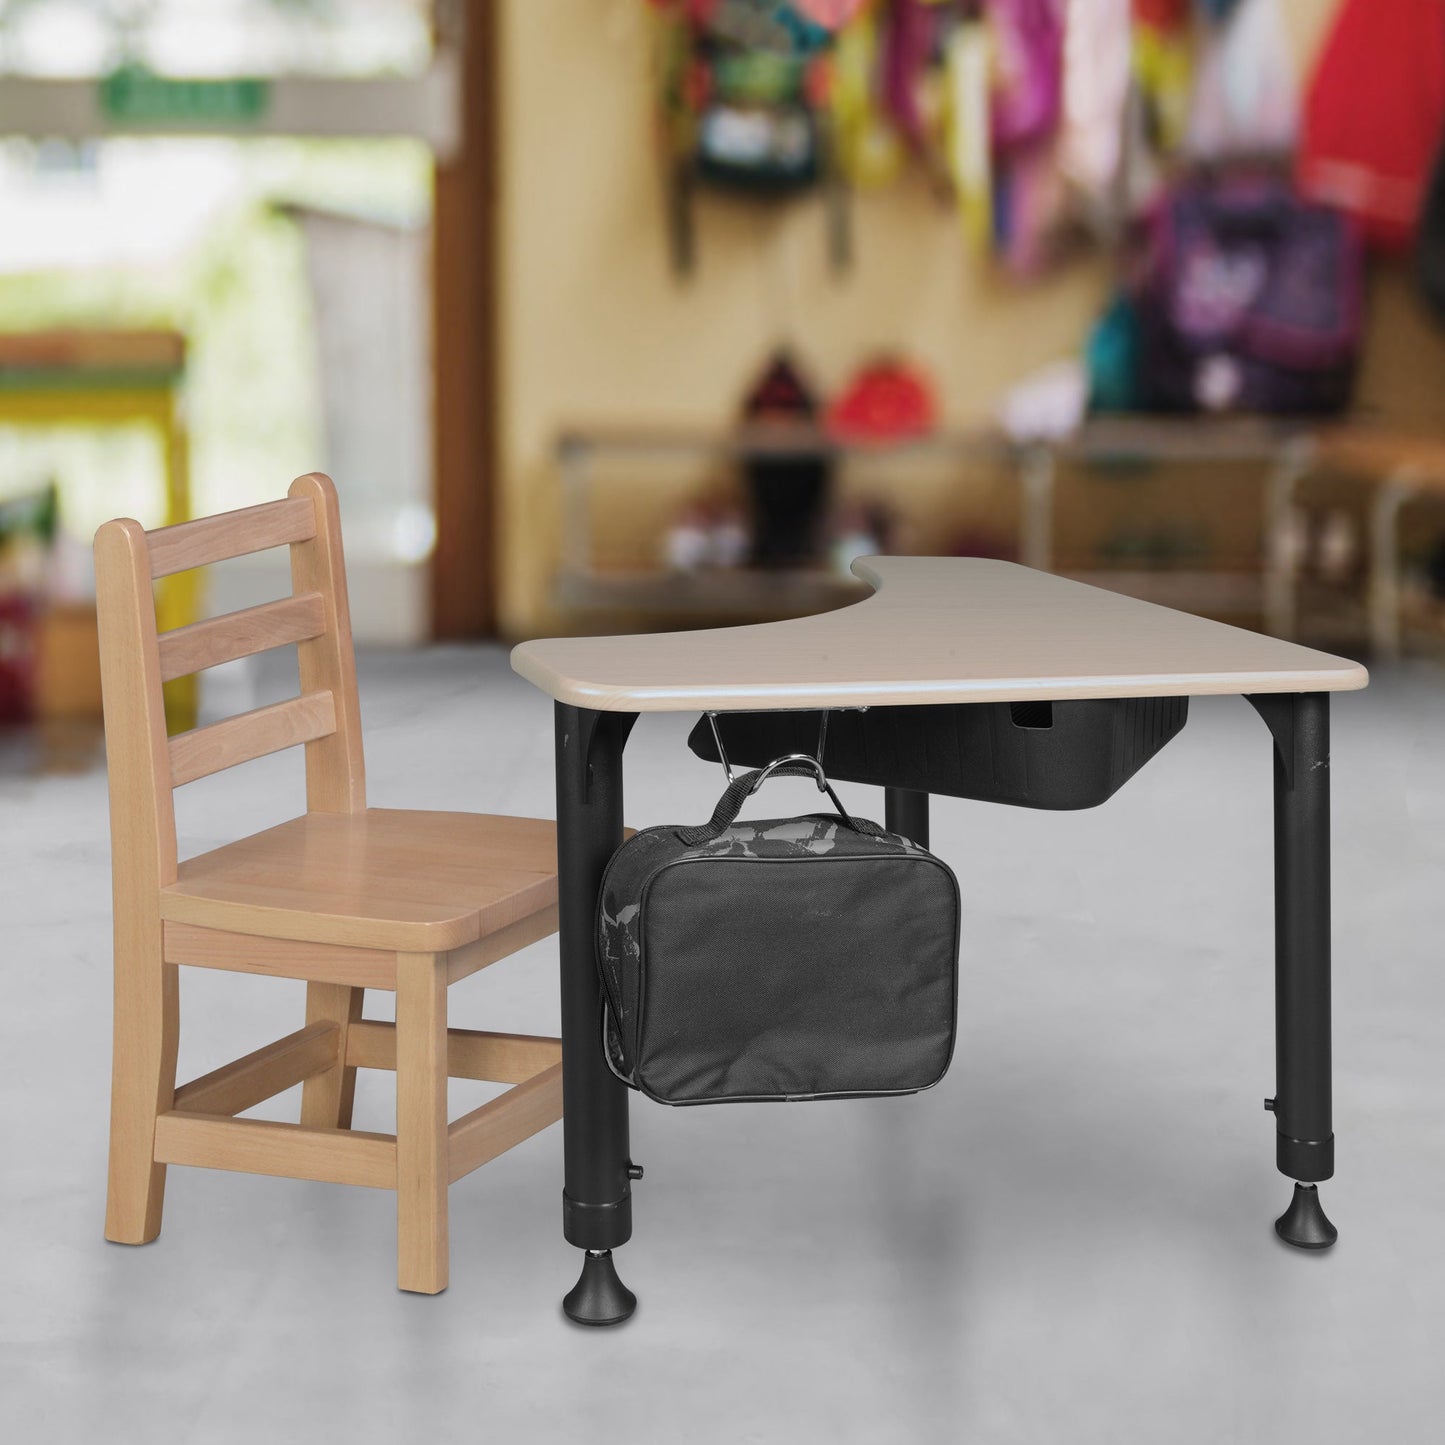 Regency 28" Boomerang Height Adjustable Plastic Top Activity School Desk with Book Storage (Maple)